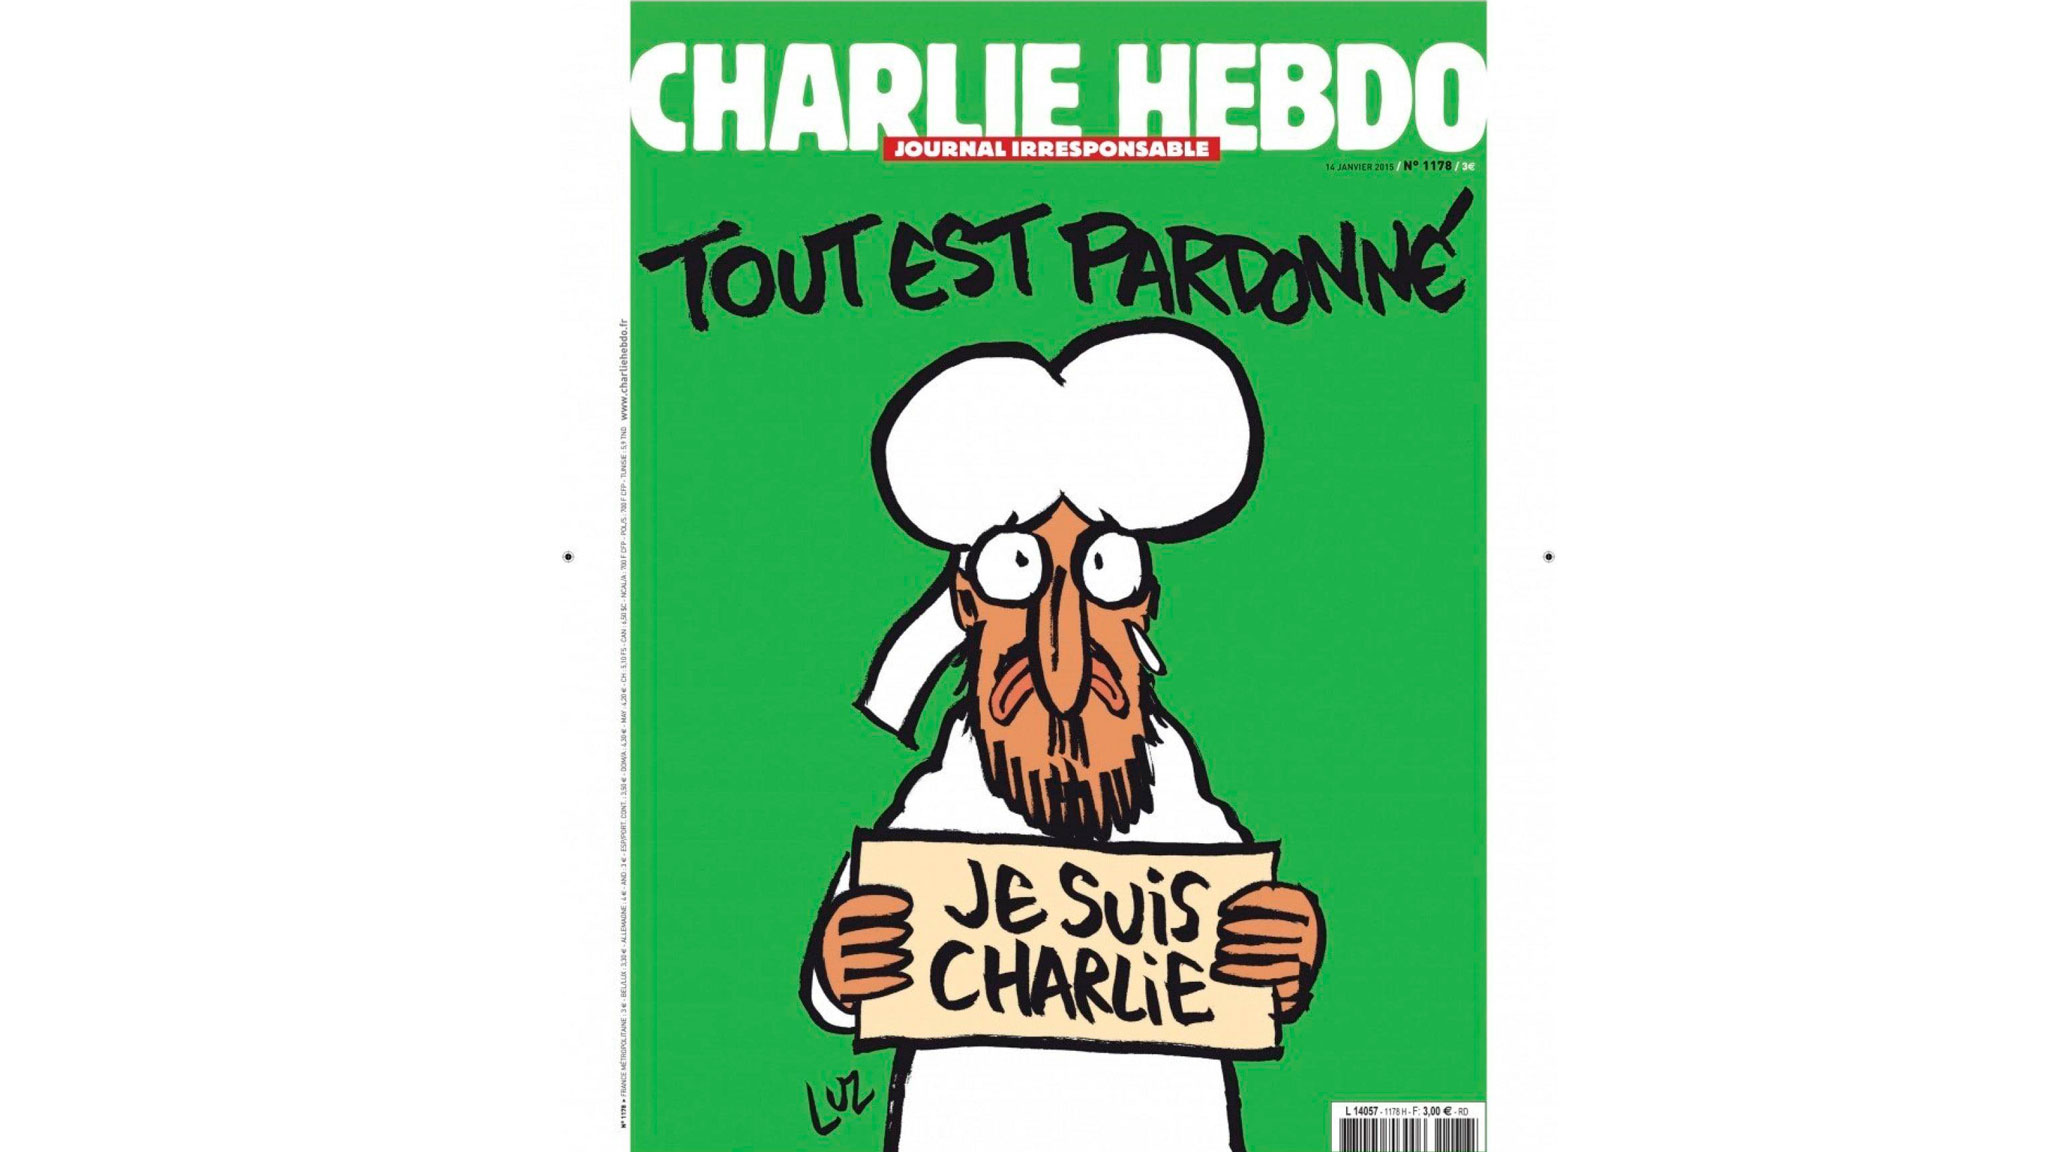 Обложка номера Charlie Hebdo от 14 января 2015 года, вышедшего через неделю после нападения на редакцию